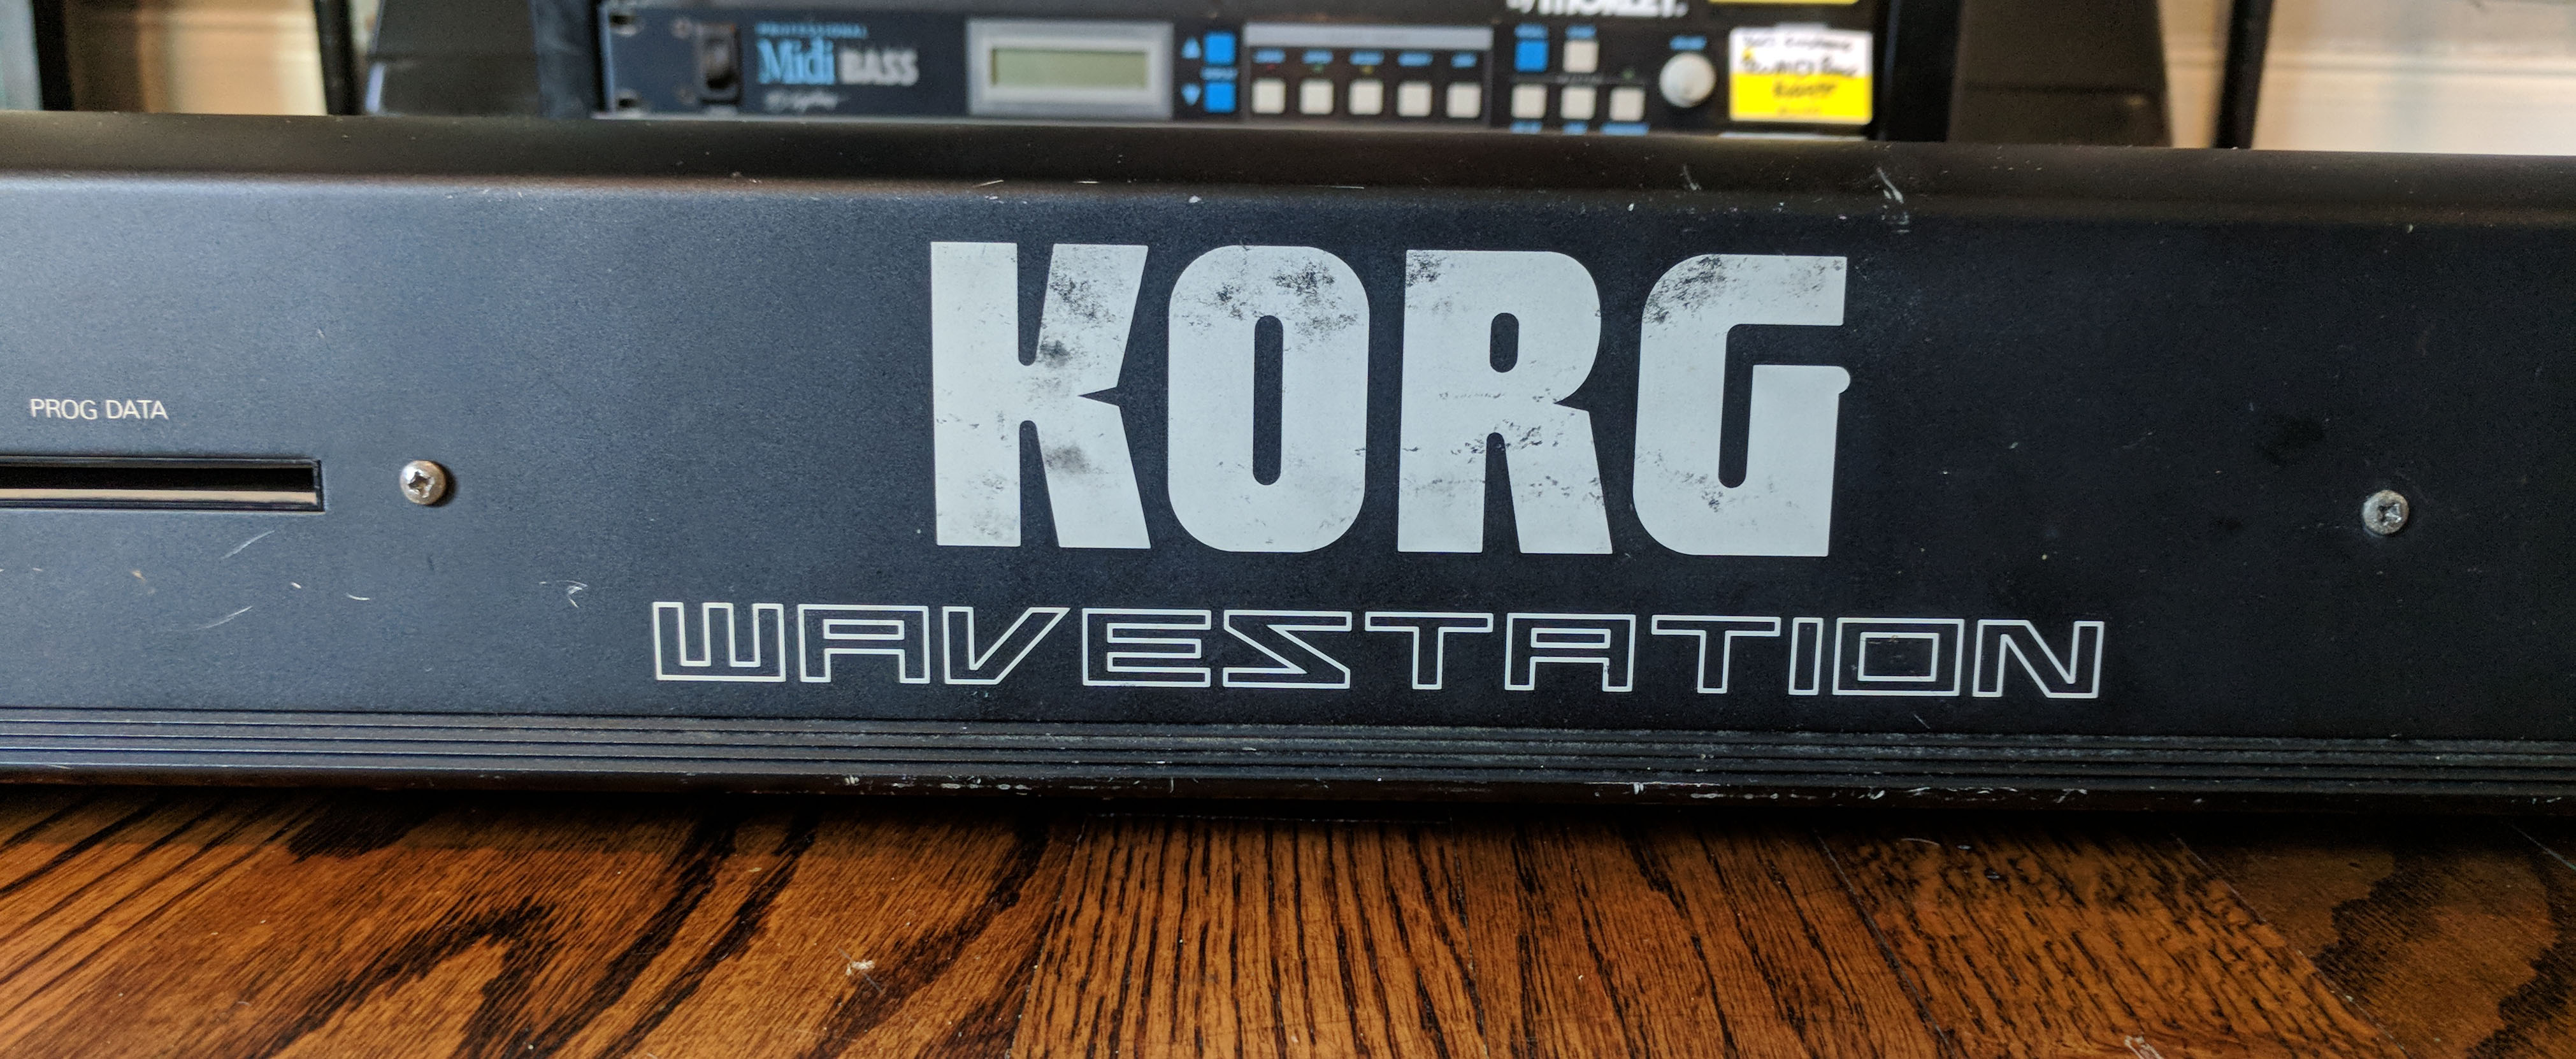 Korg Wavestation